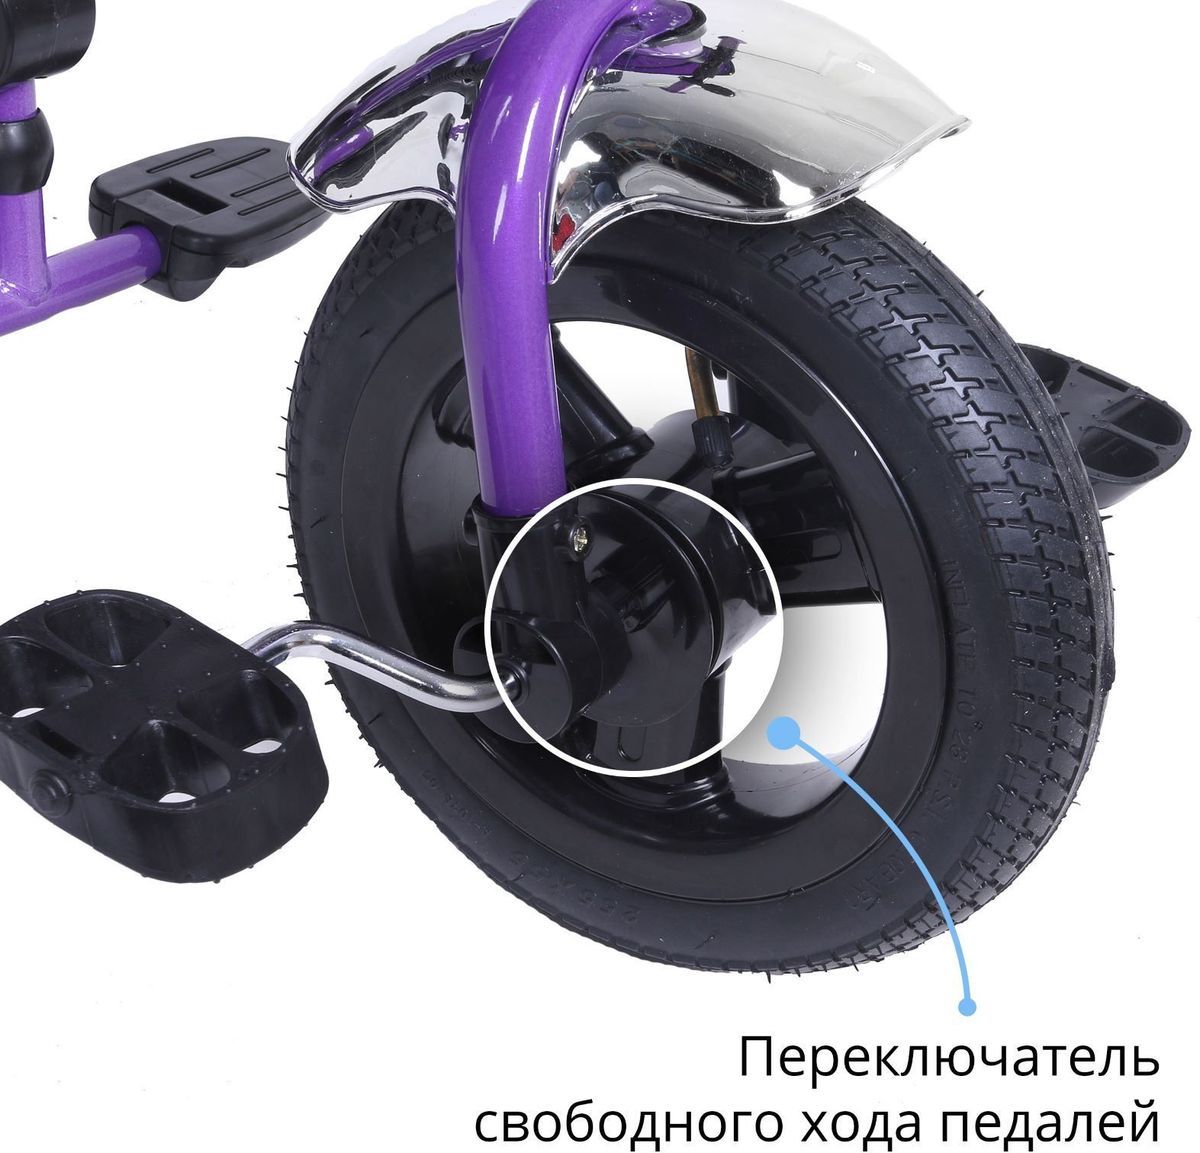 Колеса на детский трехколесный велосипед. Anti UV велосипед трехколесный. Велосипед детский трехколесный Rapid t-315 (фиолетовый). Велосипед Престиж Air трехколесный. Детский велосипед с ручкой Anti-UV трёхколесный.